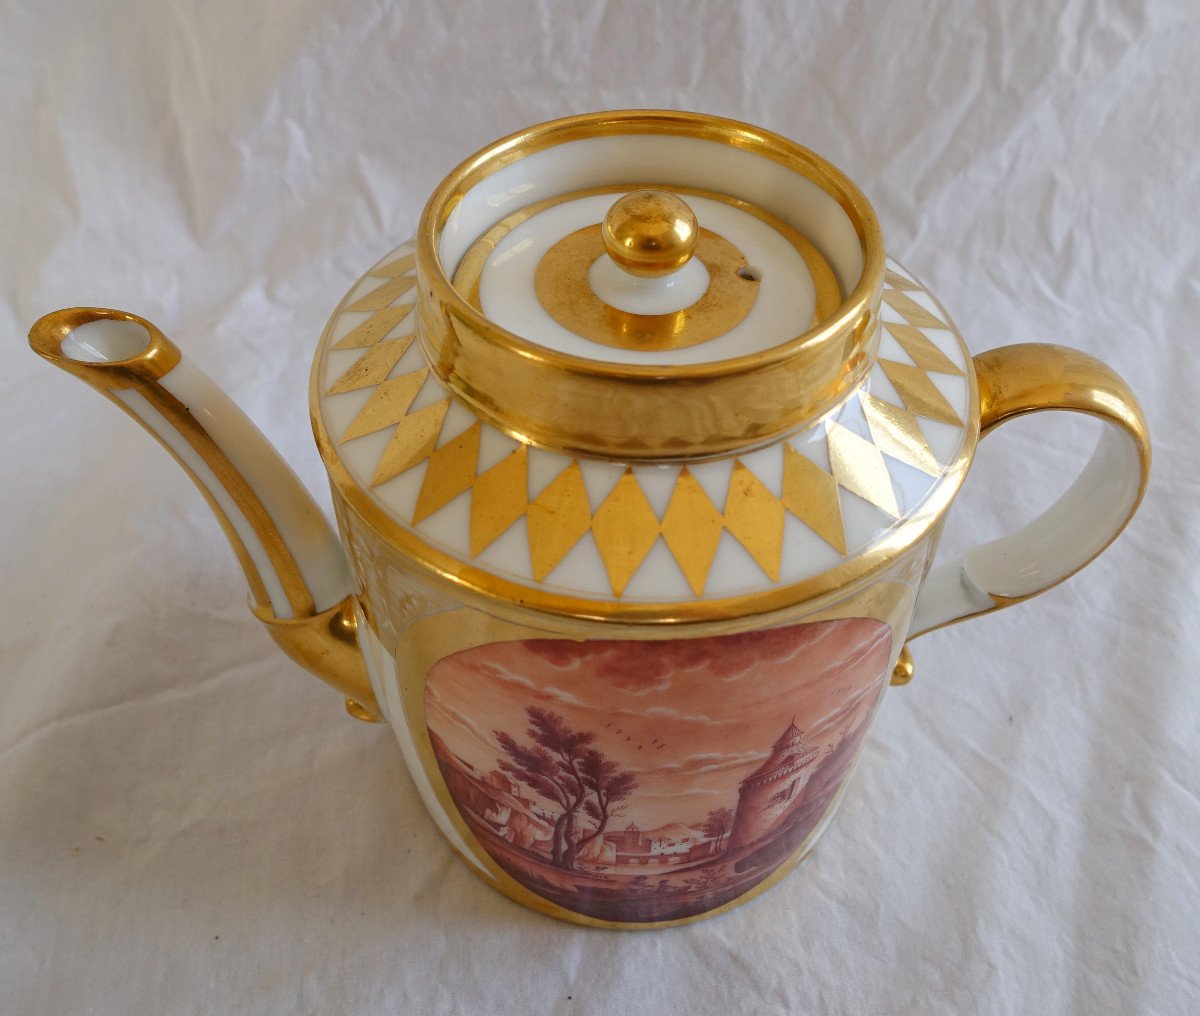 Schoelcher Manufacture - Directoire Empire Period Porcelain Teapot - Camaieu Landscapes-photo-6